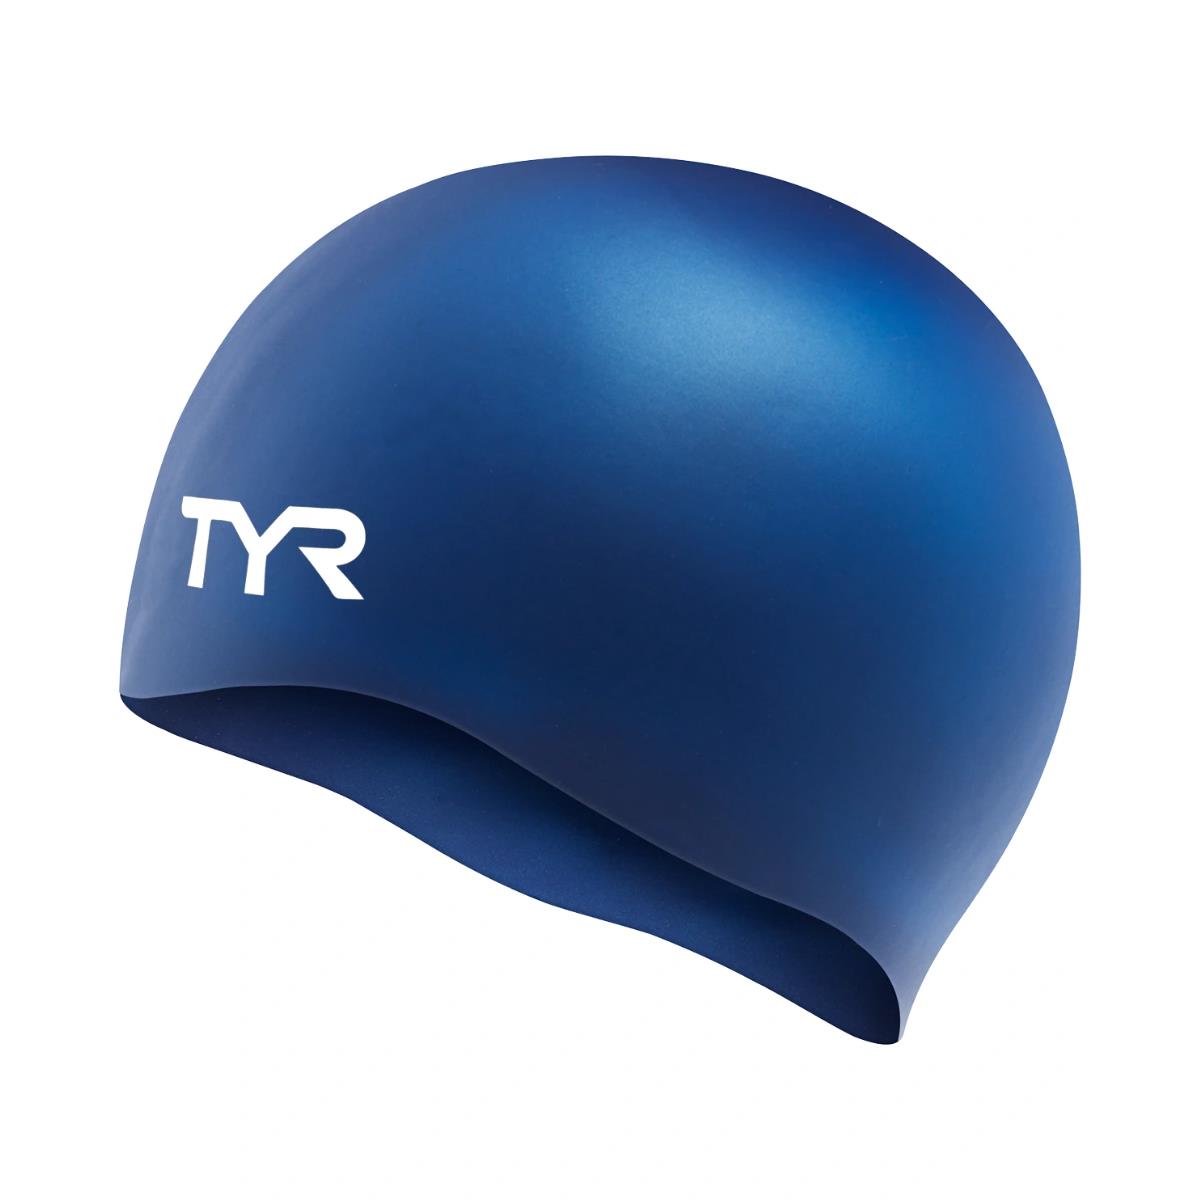 Tampões de Silicone Sem Rugas TYR Swim Caps - Navy Blue